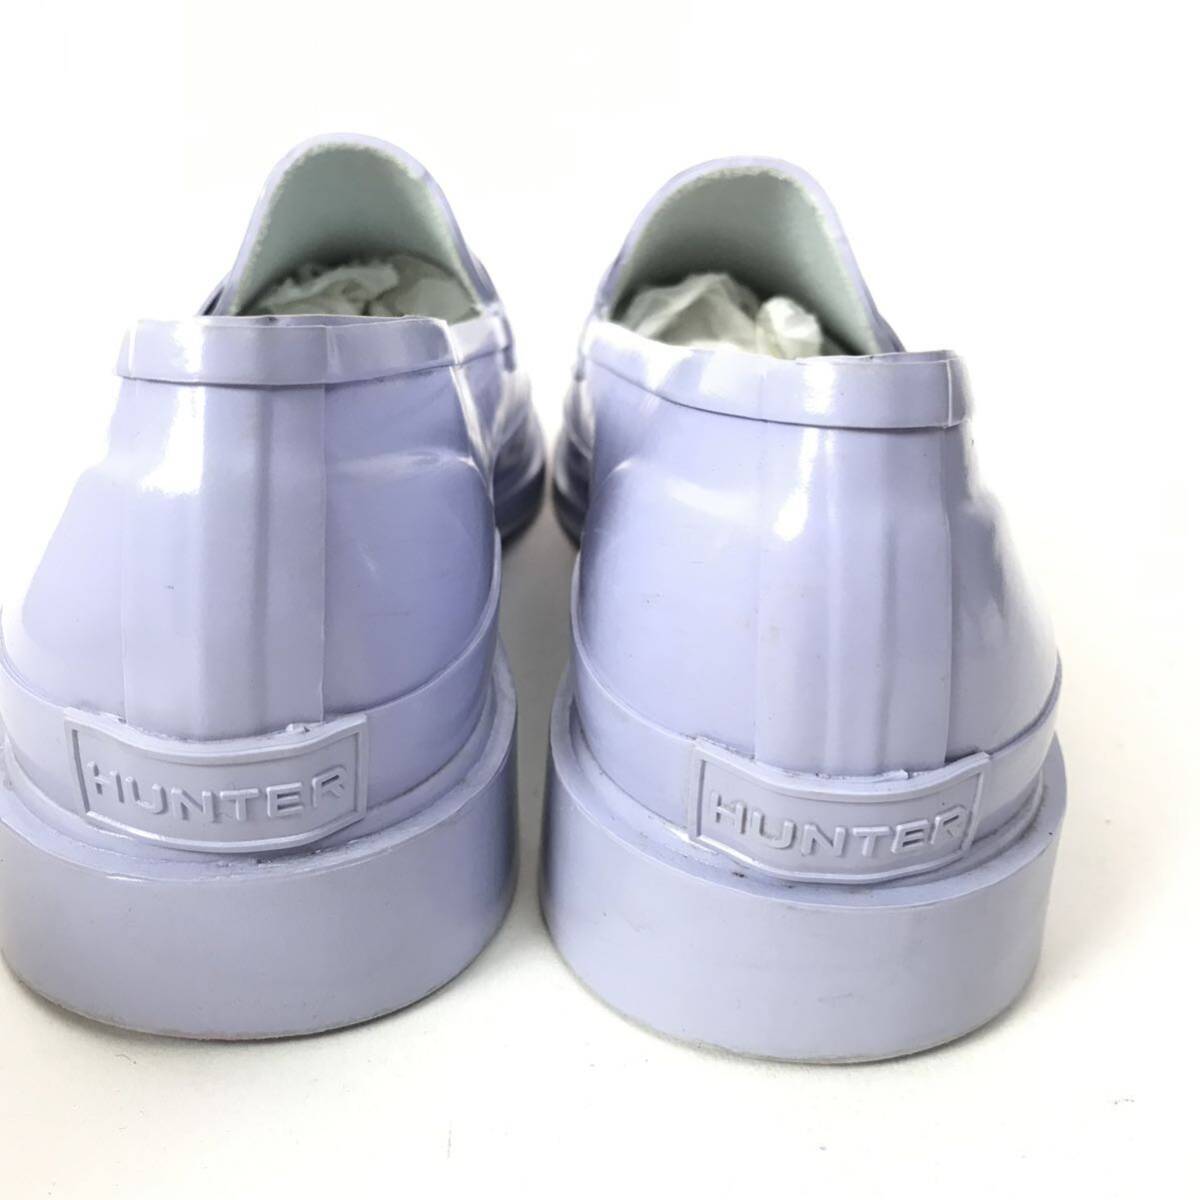 k23 HUNTER ...  дождь   обувь    резина  ... мех   дождь  обувь   light  фиолетовый   лаванда  ... UK6 EU39  женский   подлинный товар    качественный товар 